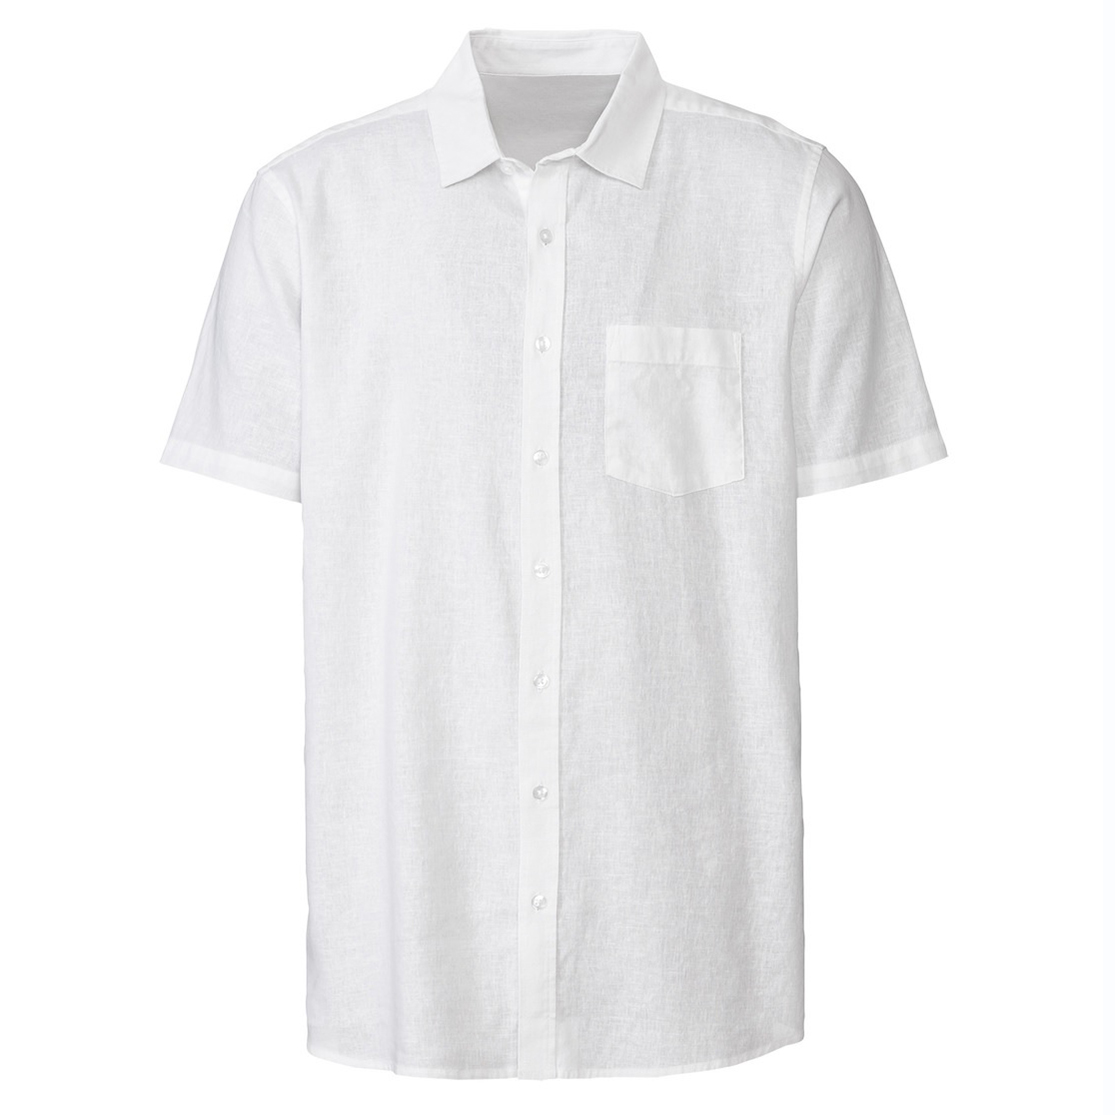 پیراهن آستین کوتاه مردانه لیورجی مدل 13640973